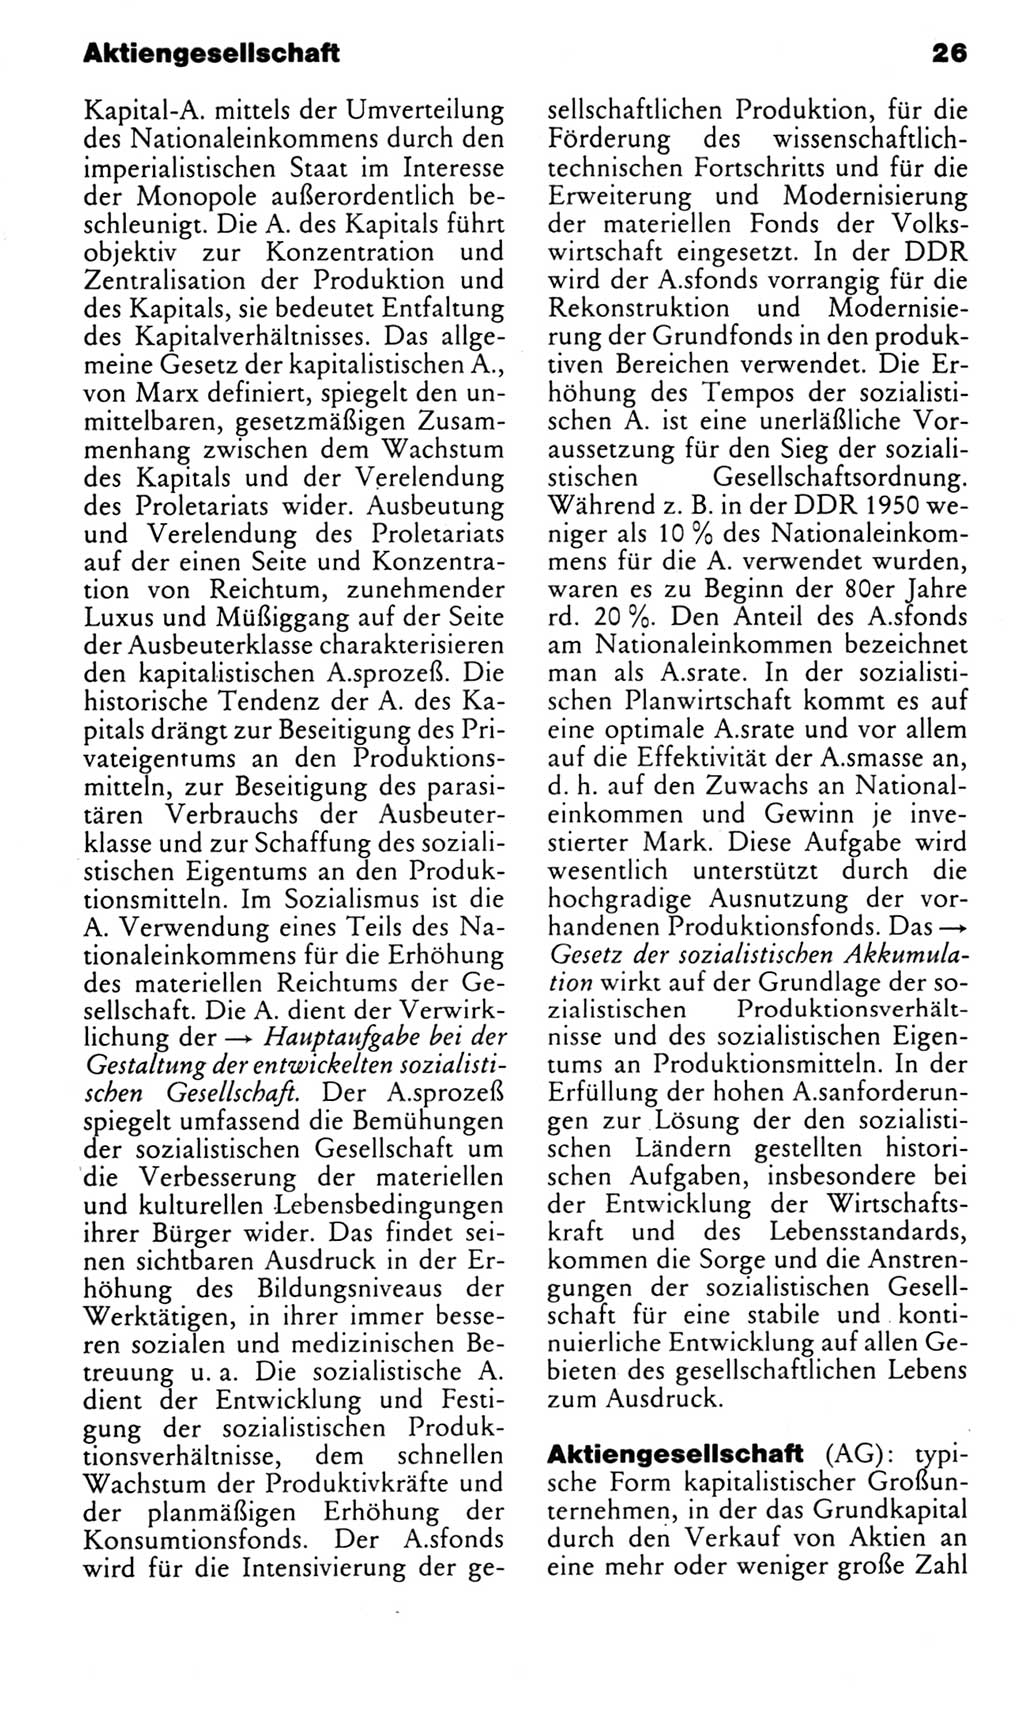 Kleines politisches Wörterbuch [Deutsche Demokratische Republik (DDR)] 1983, Seite 26 (Kl. pol. Wb. DDR 1983, S. 26)